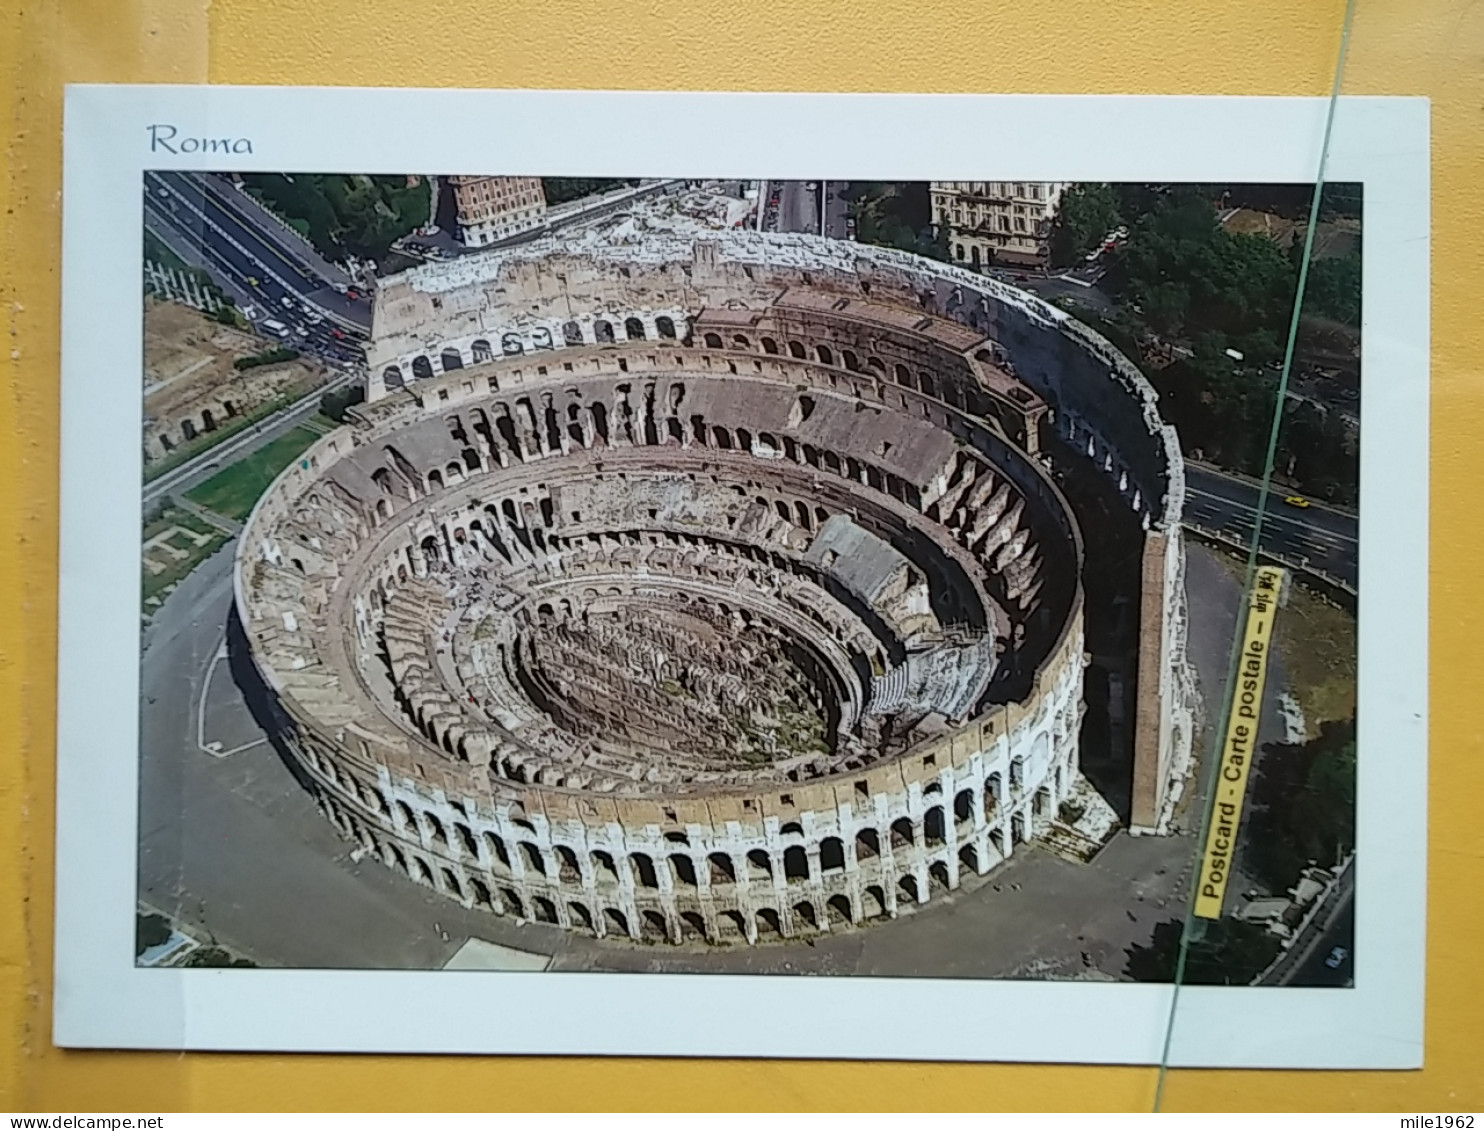 KOV 417-55 - ROMA, Italia, Colosseo, Coliseum, Colisee - Kolosseum